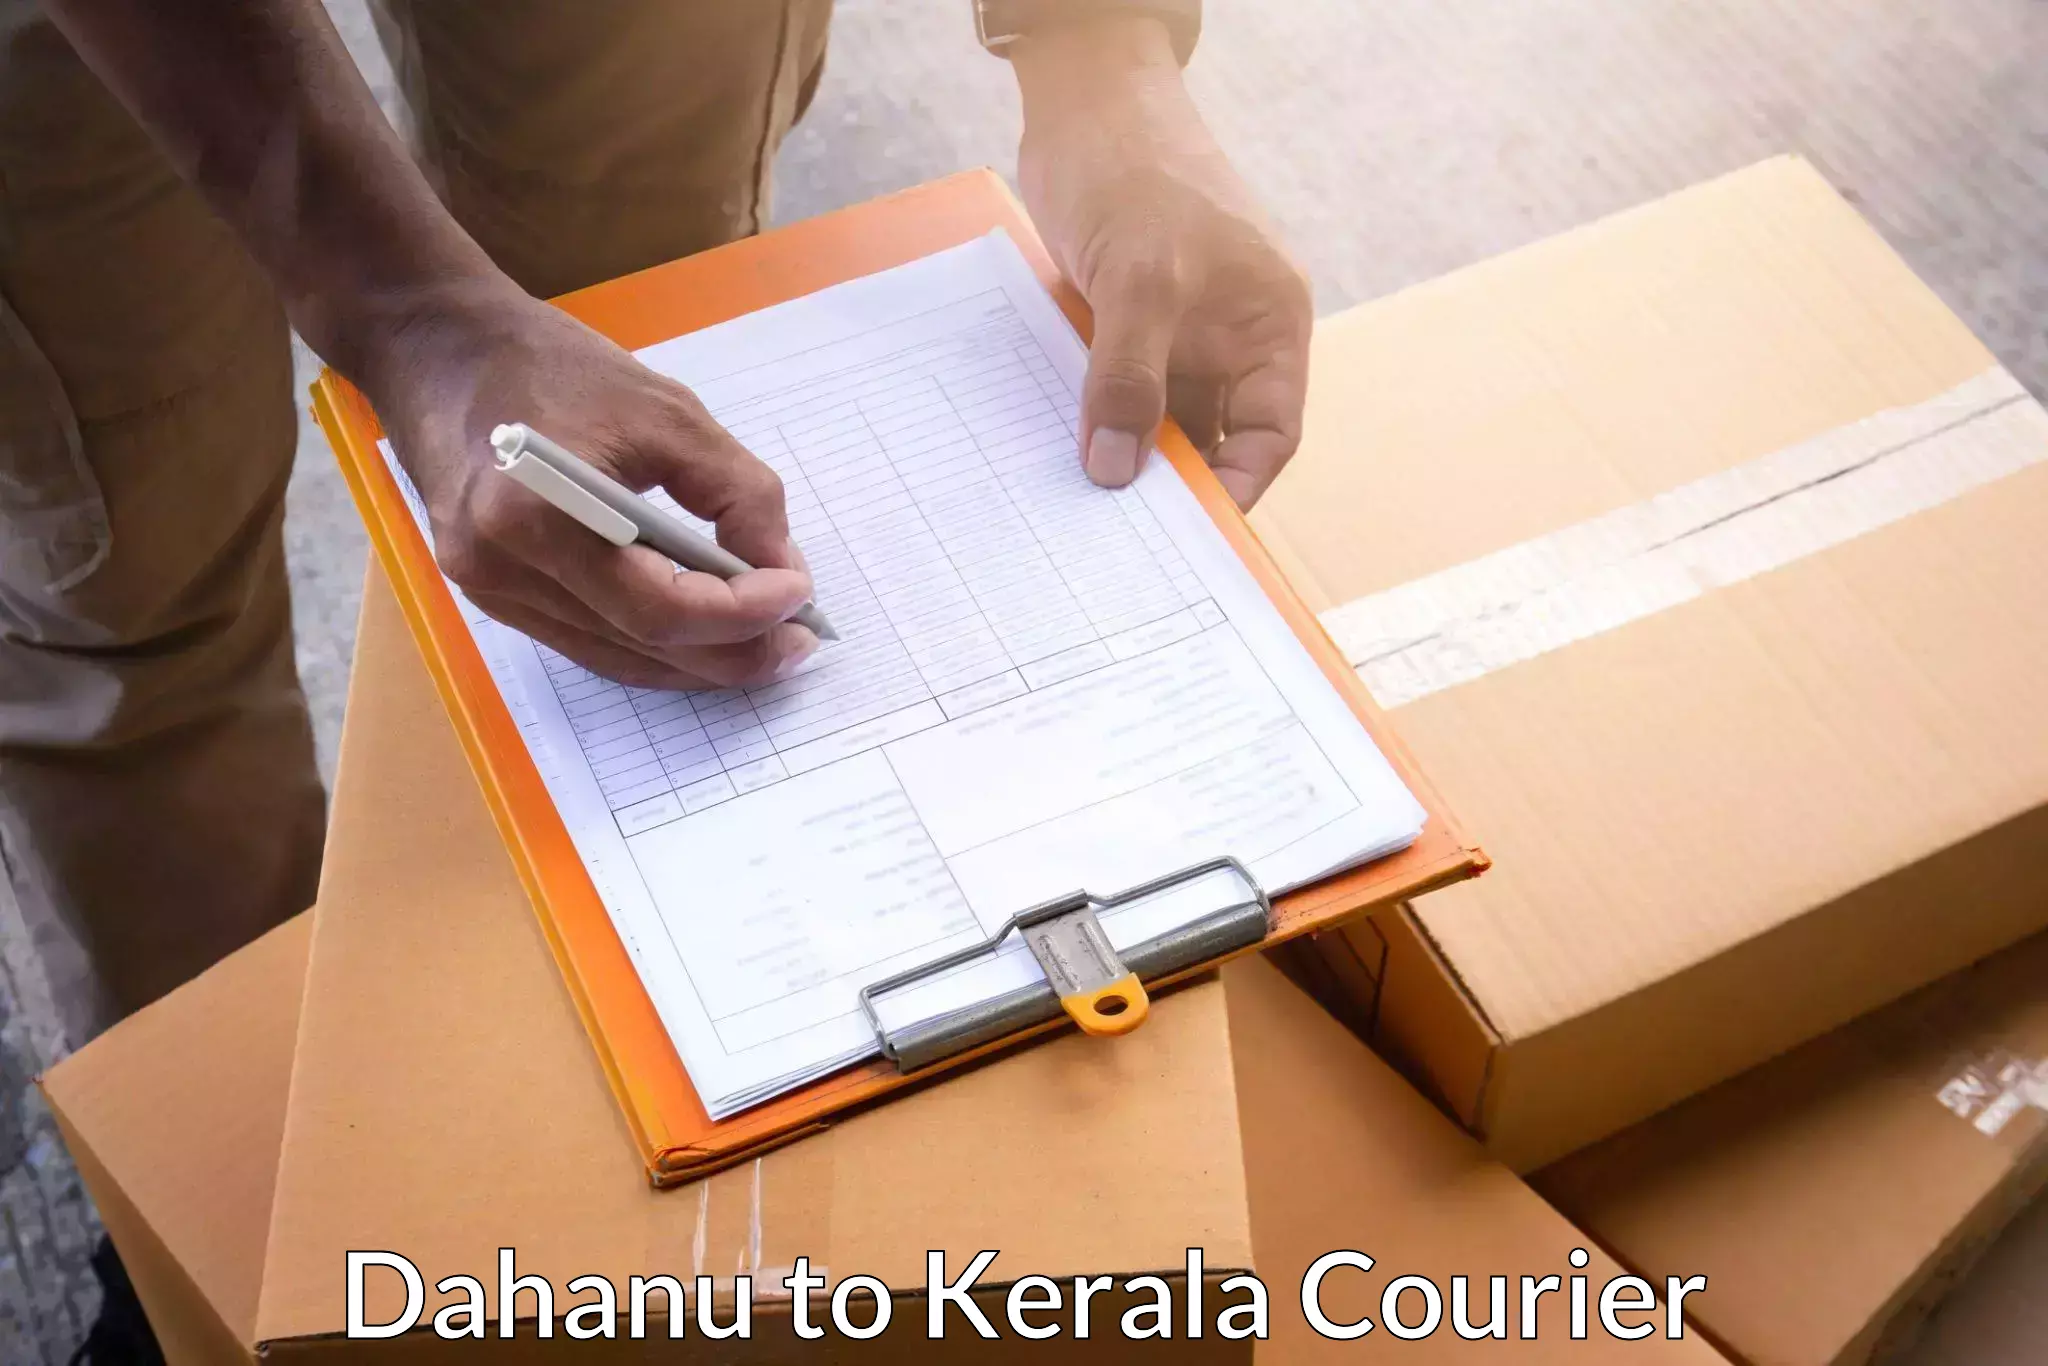 Global logistics network Dahanu to Kerala